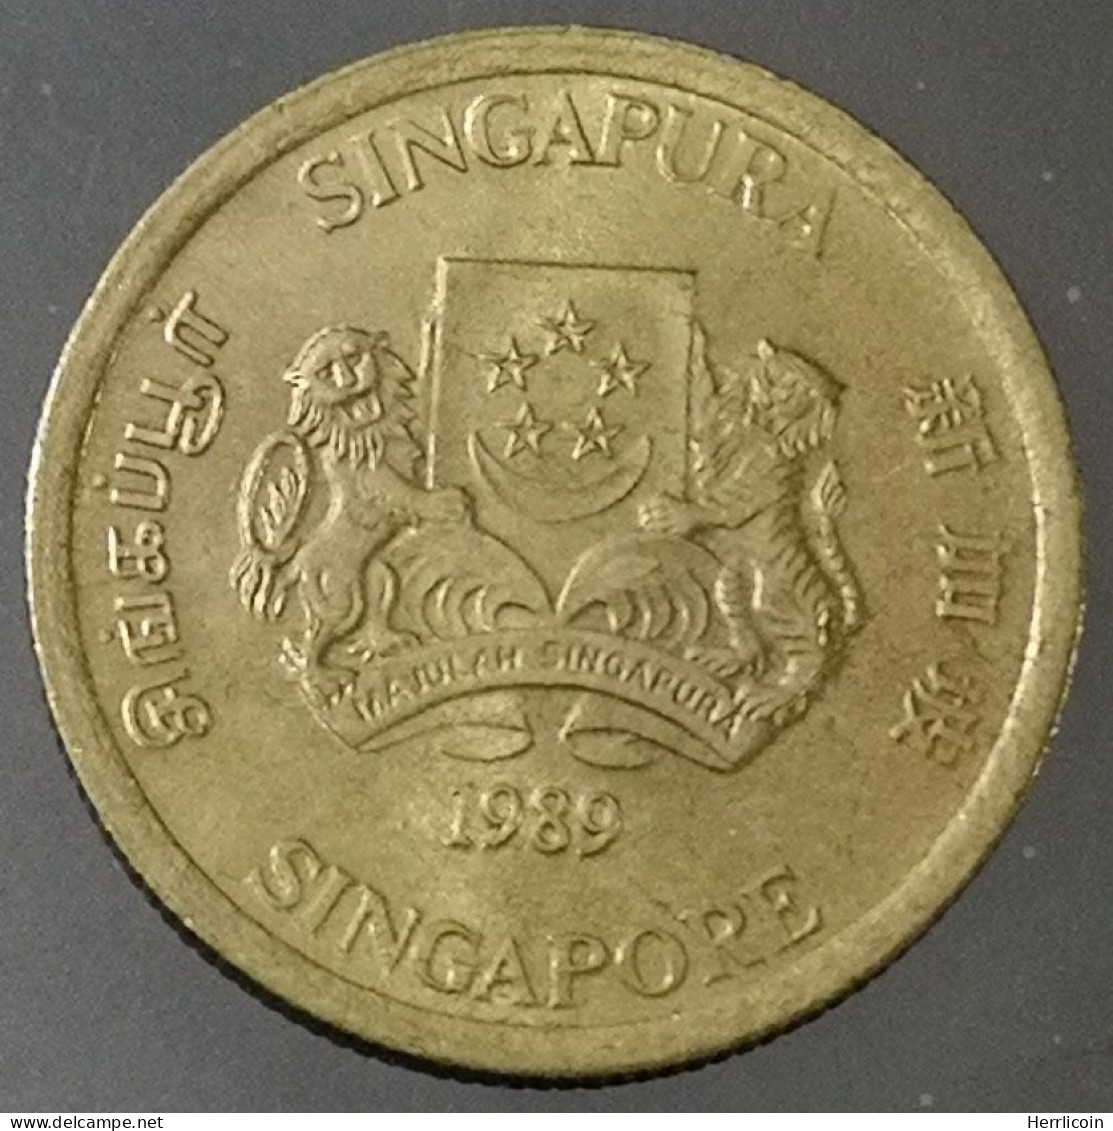 Monnaie Singapour - 1989 - 5 Cents Blason Haut - Singapore